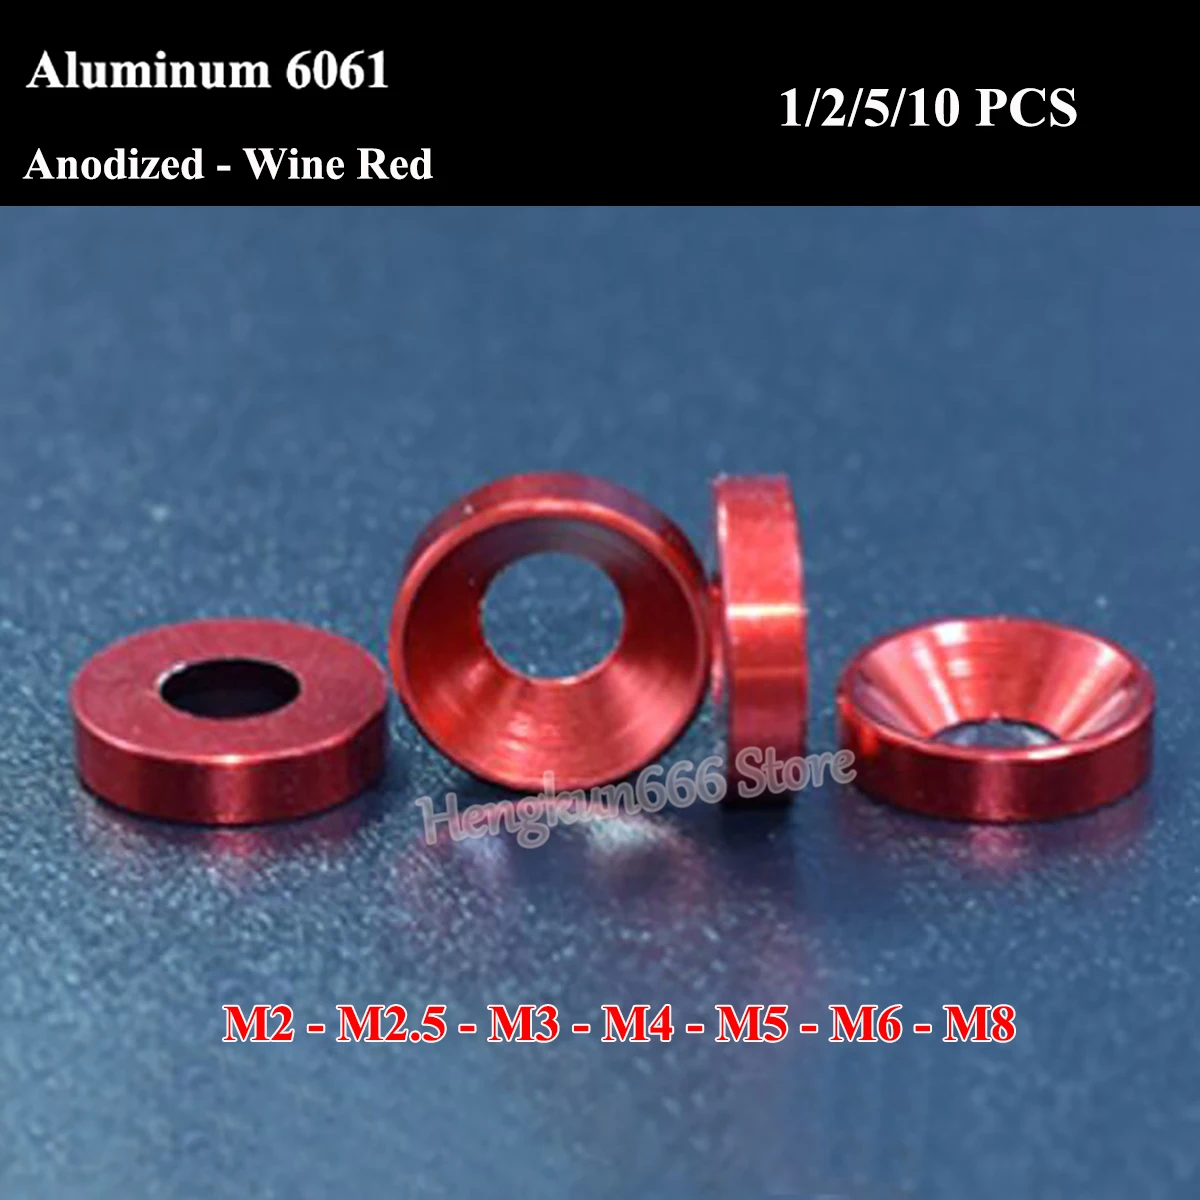 

Плоская шайба из алюминиевого сплава M2 M2.5 M3 M4 M5 M6 M8 анодированная-винно-красная алюминиевая 6061 болты с потайной головкой и прокладка шайбы